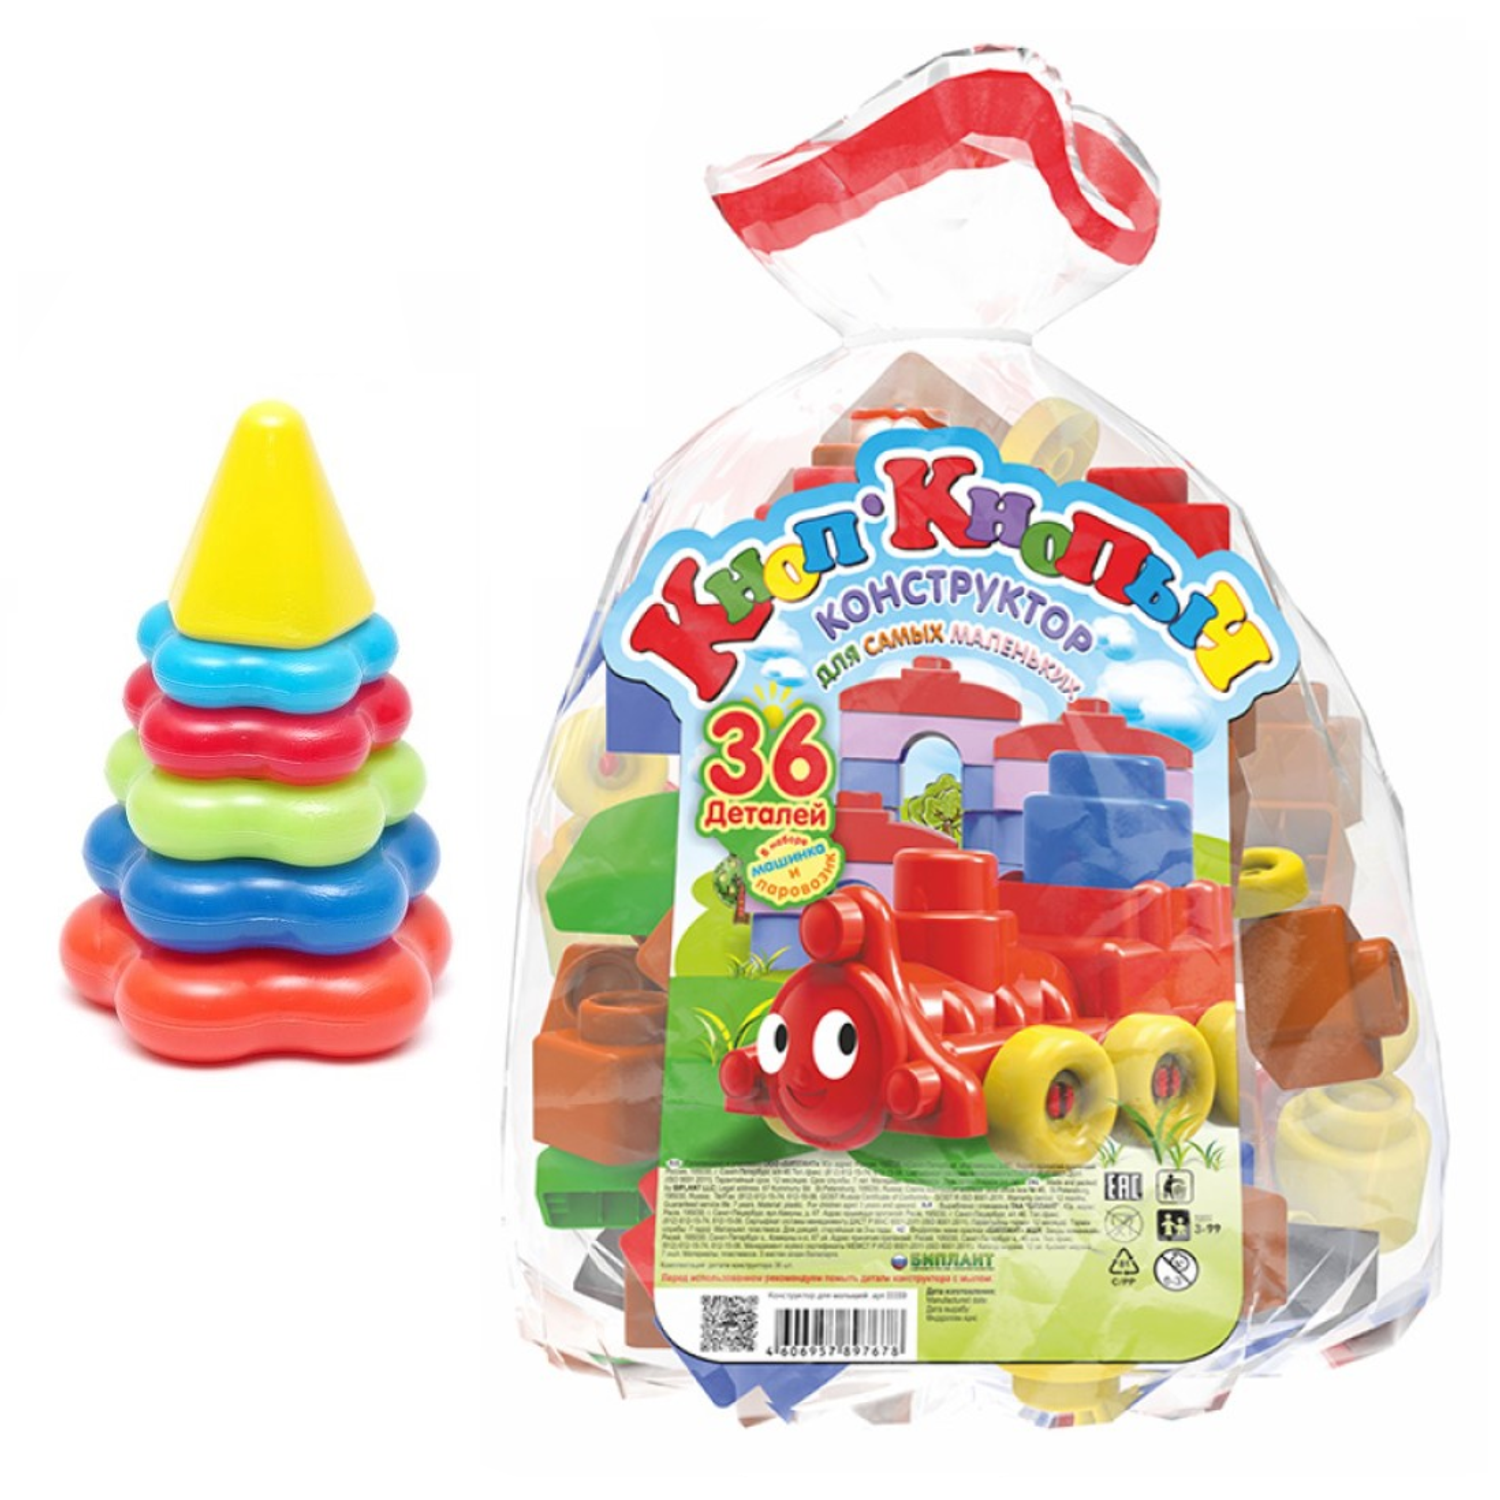 Головоломки и логические игрушки для детей купить в Самаре: Чакона, цена в интернет-магазине